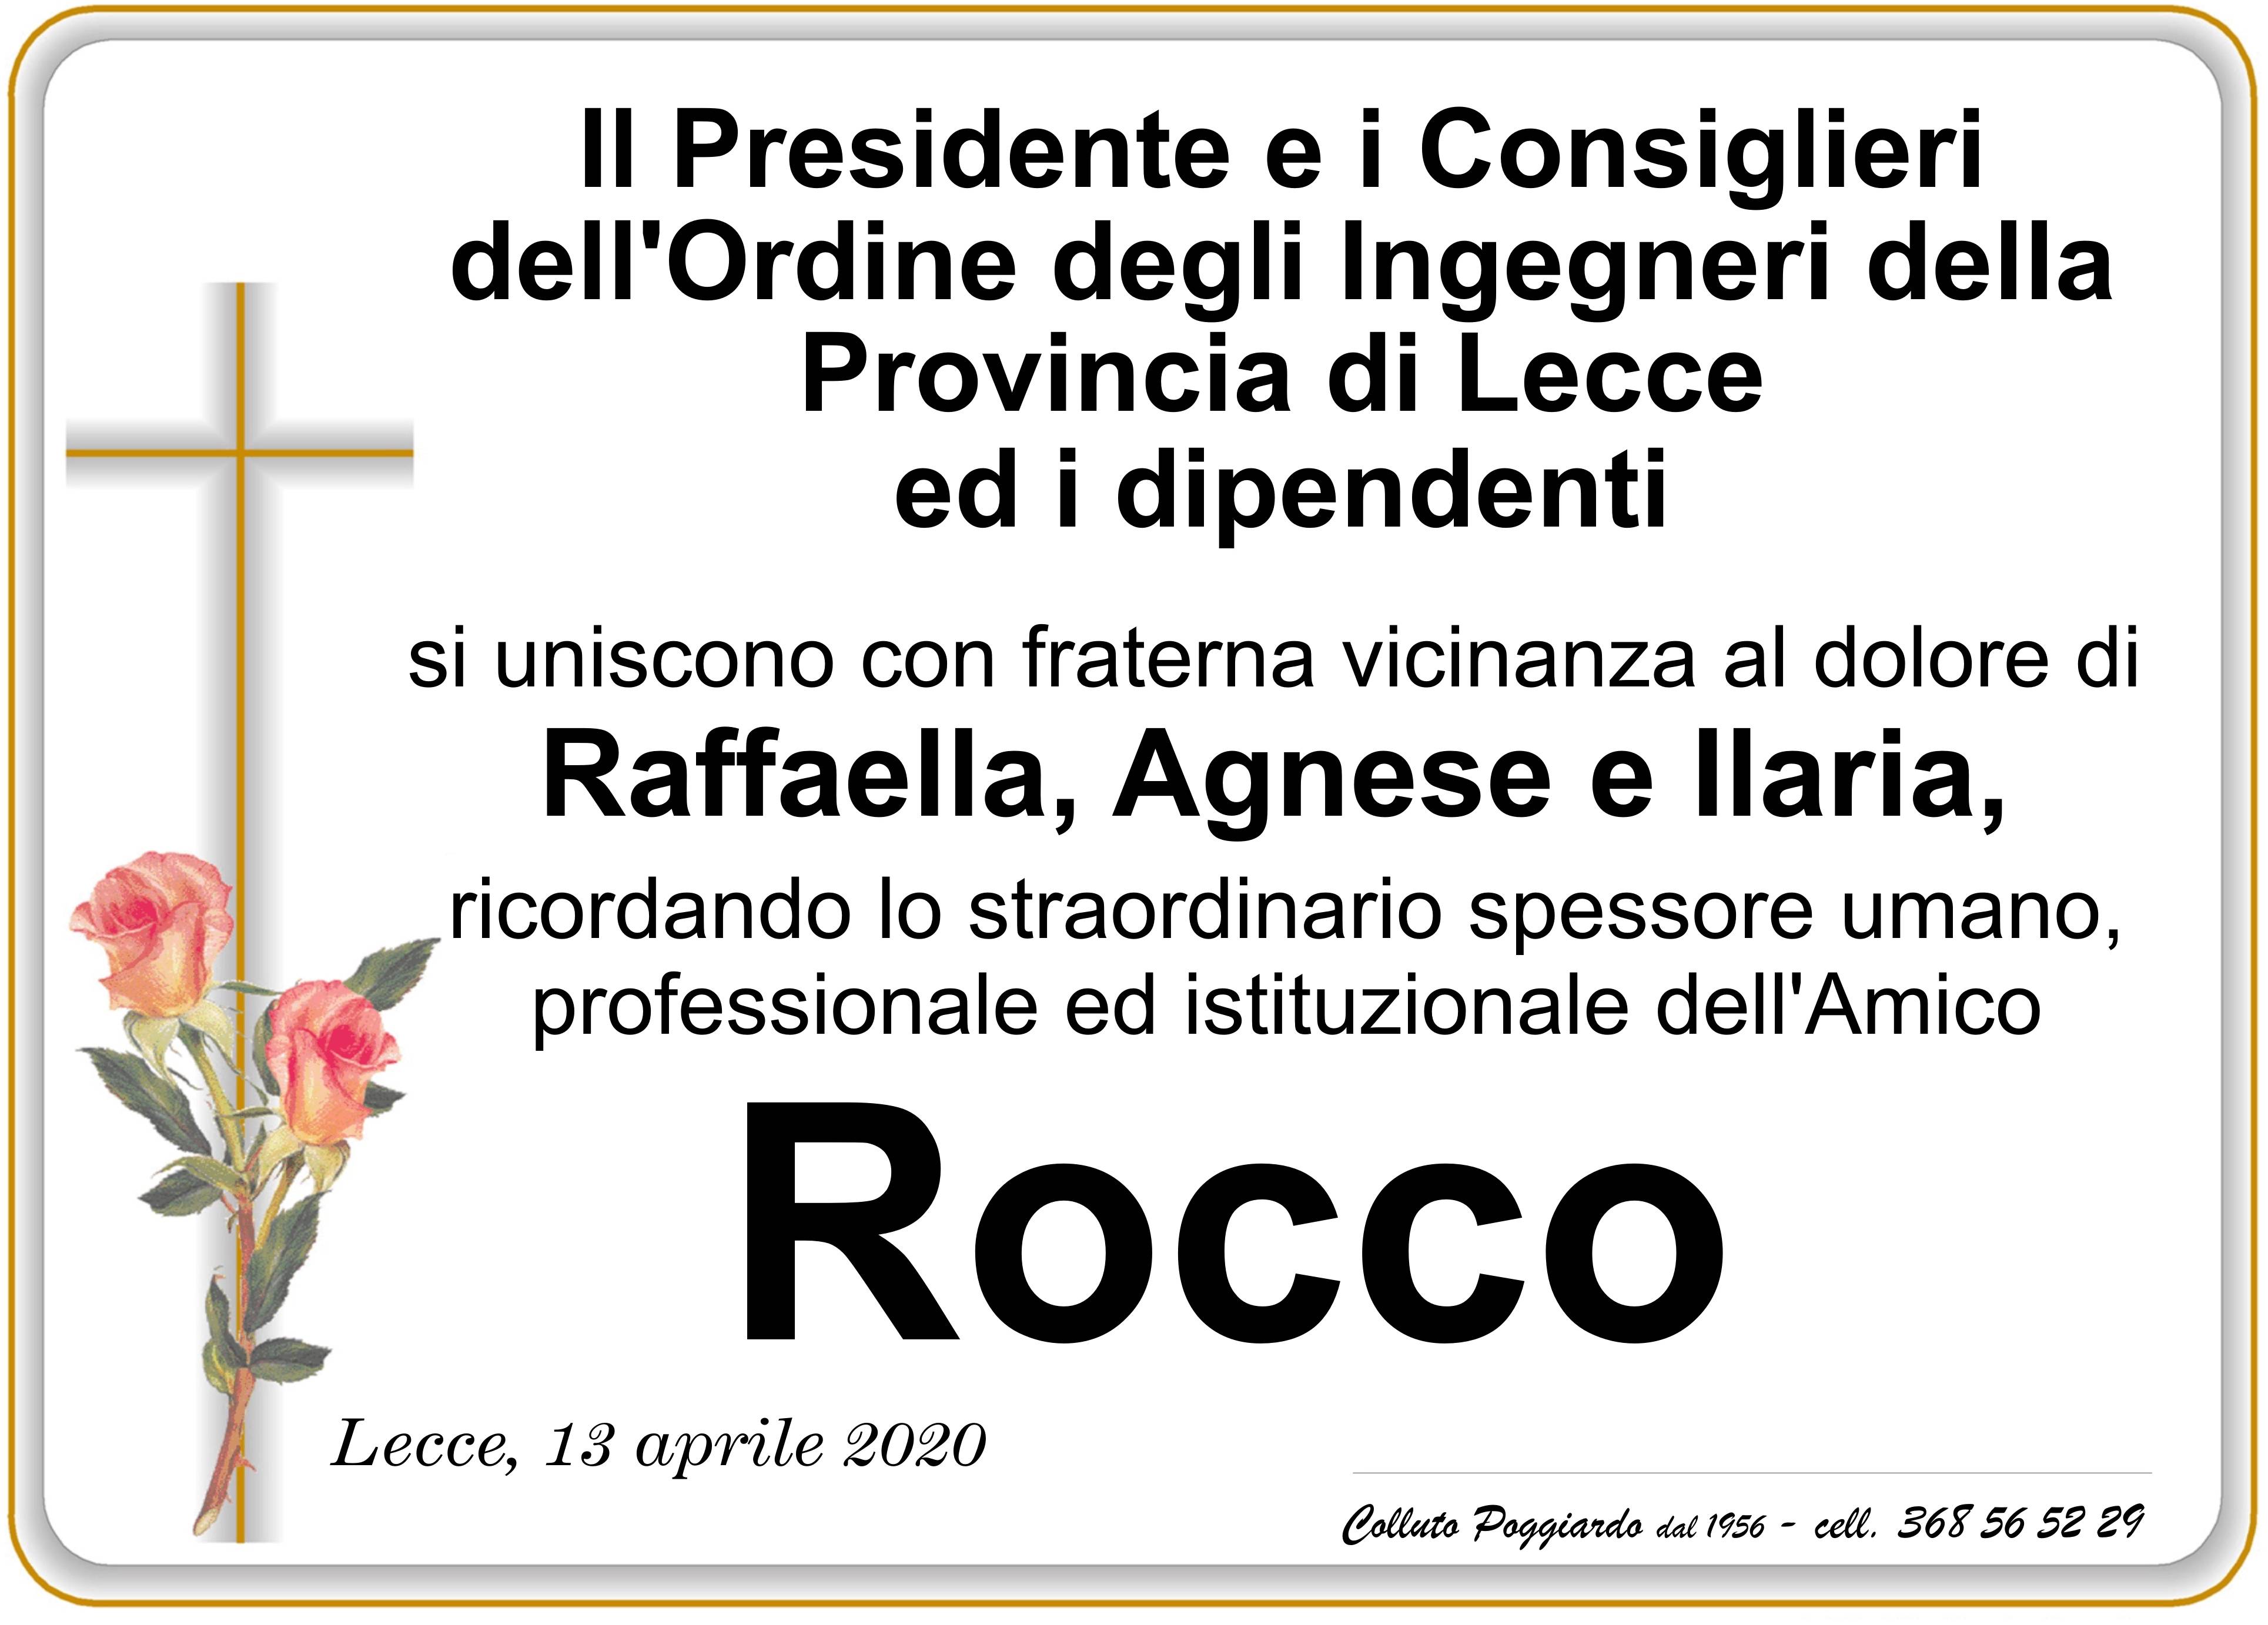 Presidente, Consiglieri e Dipendenti dell'Ordine degli Ingegneri di Lecce